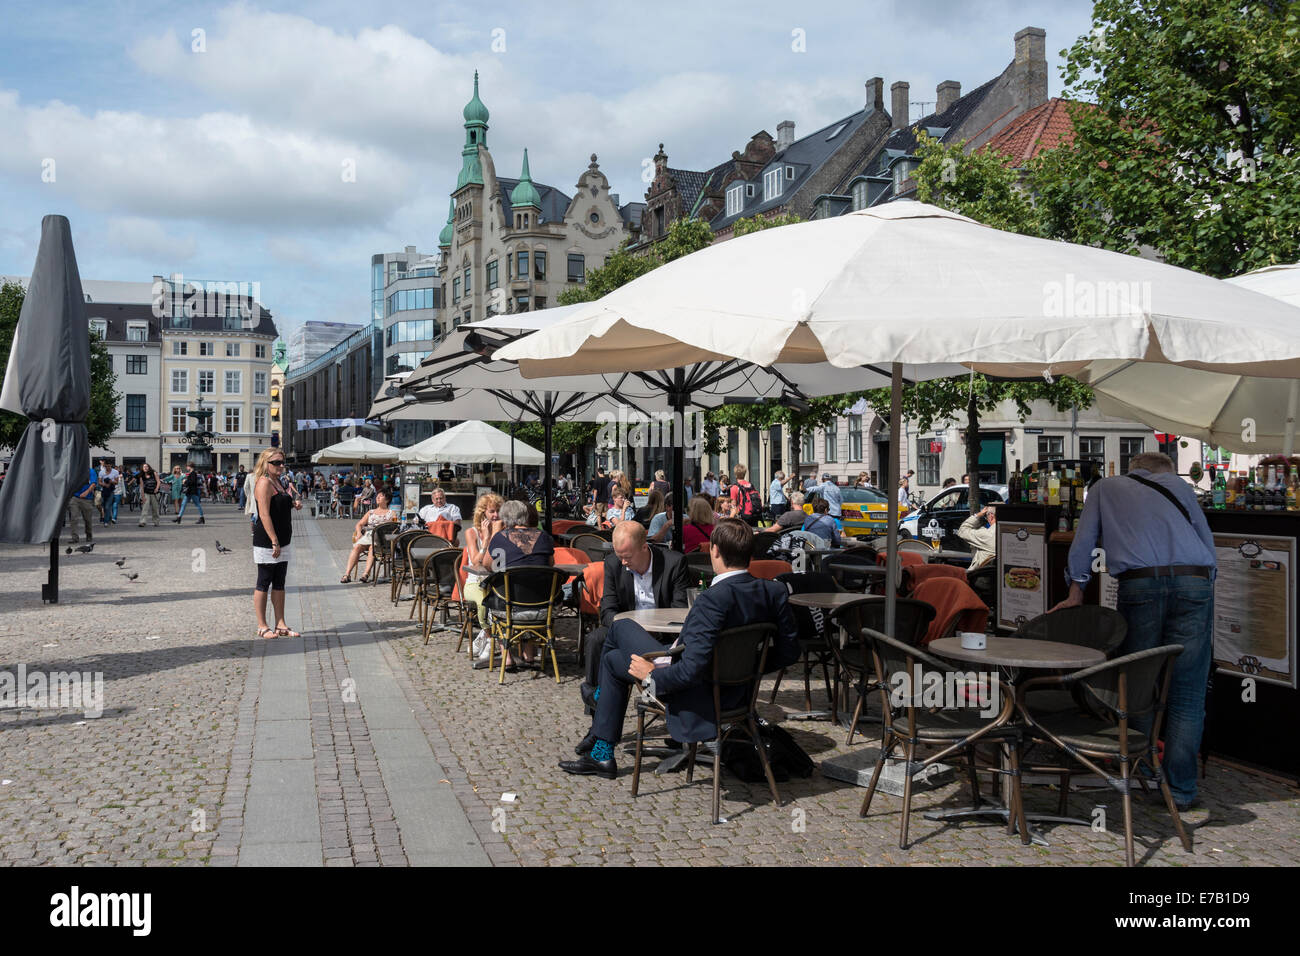 Les cafés en plein air, Hojbro Plads, Copenhague, Danemark Banque D'Images